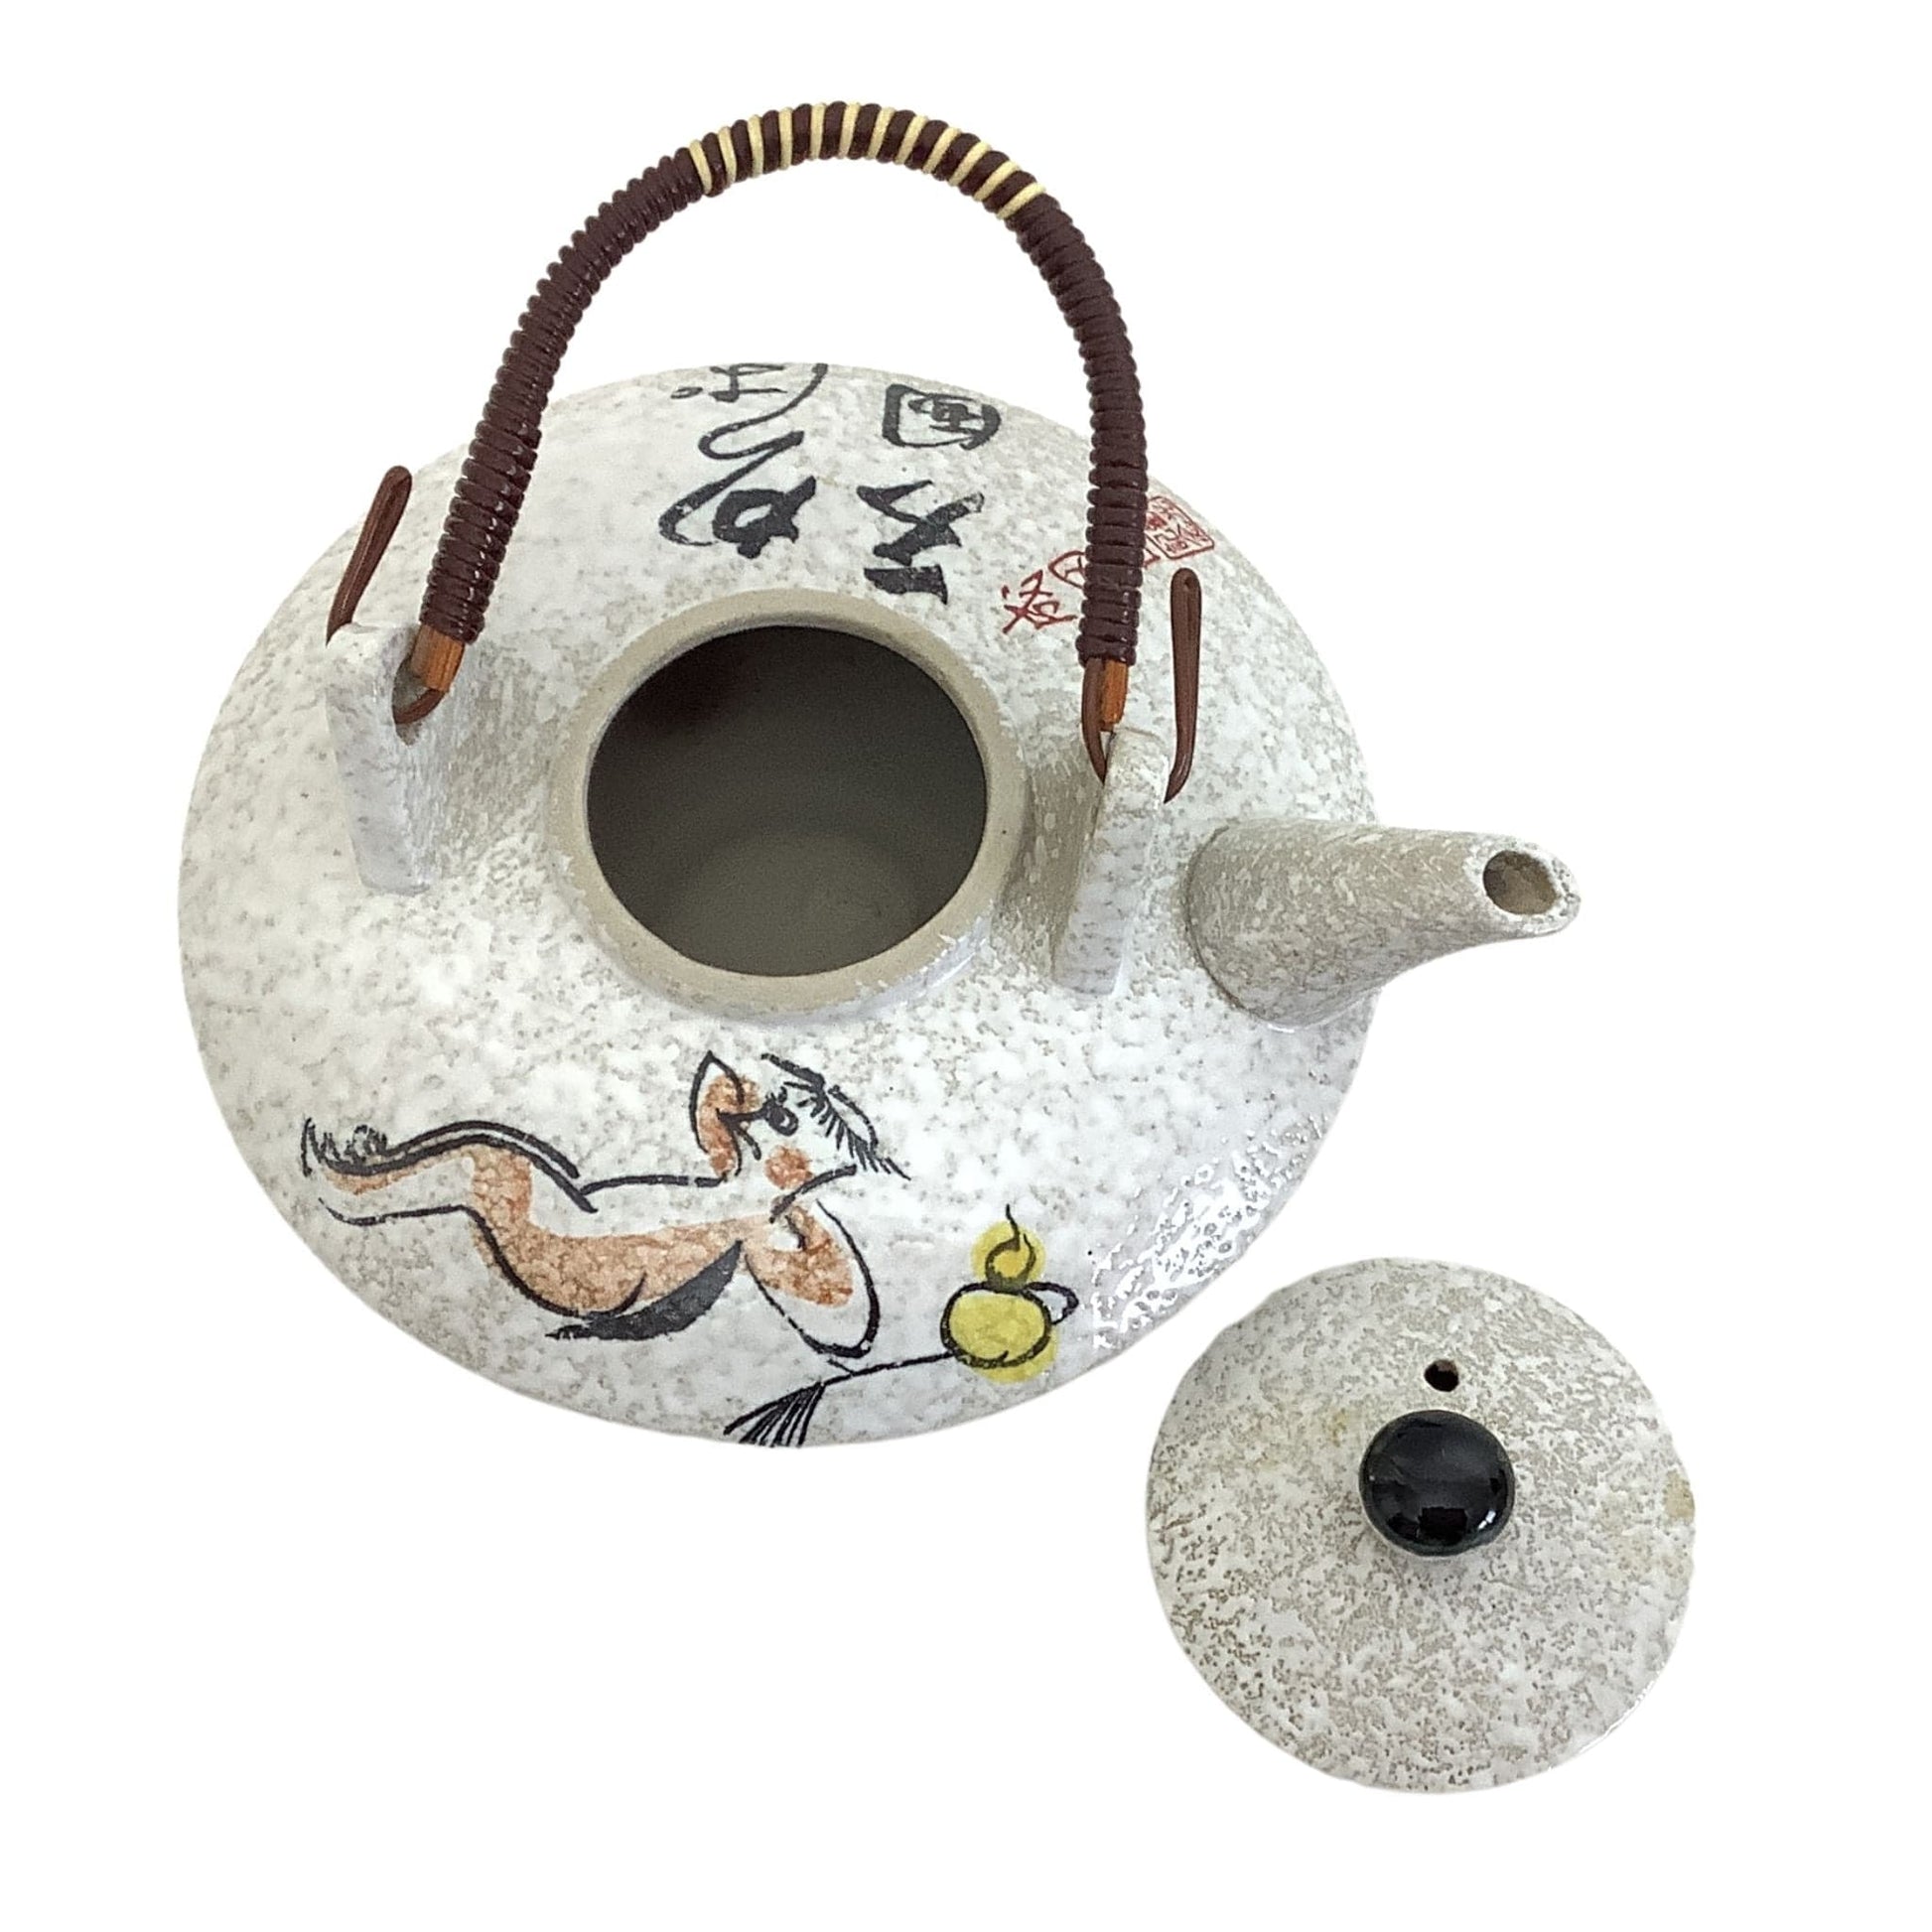 Novelty Japanese Teapot Multi / Ceramic / Asian